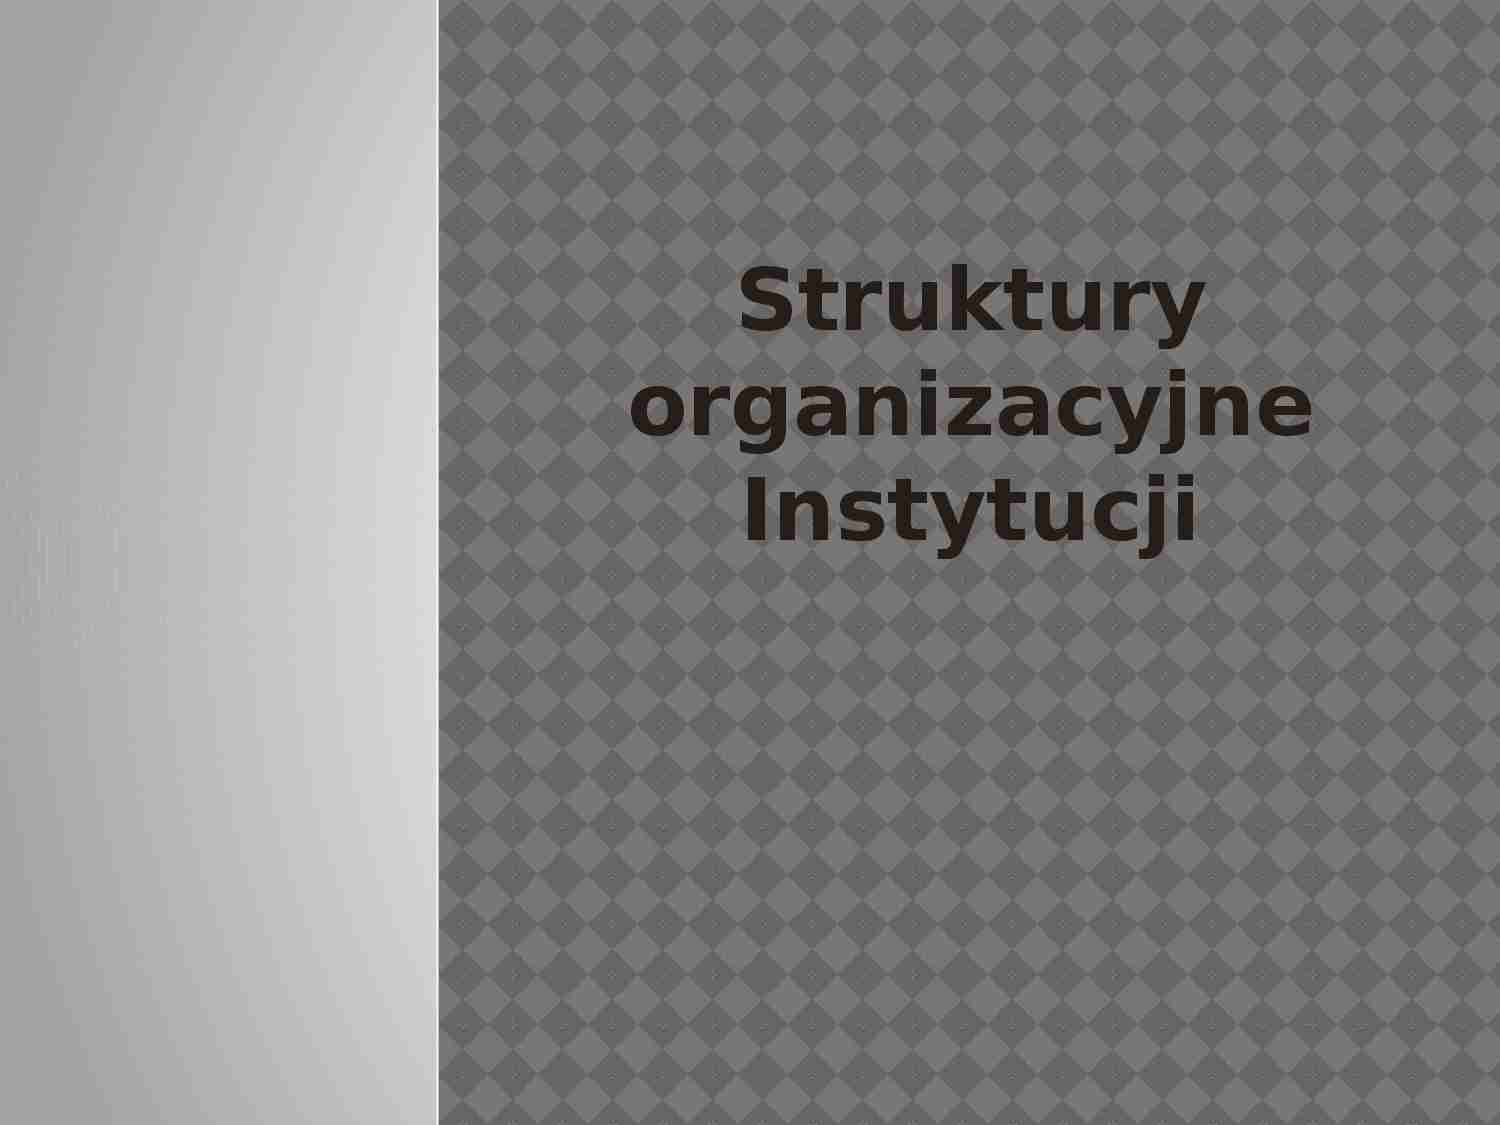  Struktury organizacyjne instytucji - omówienie - strona 1